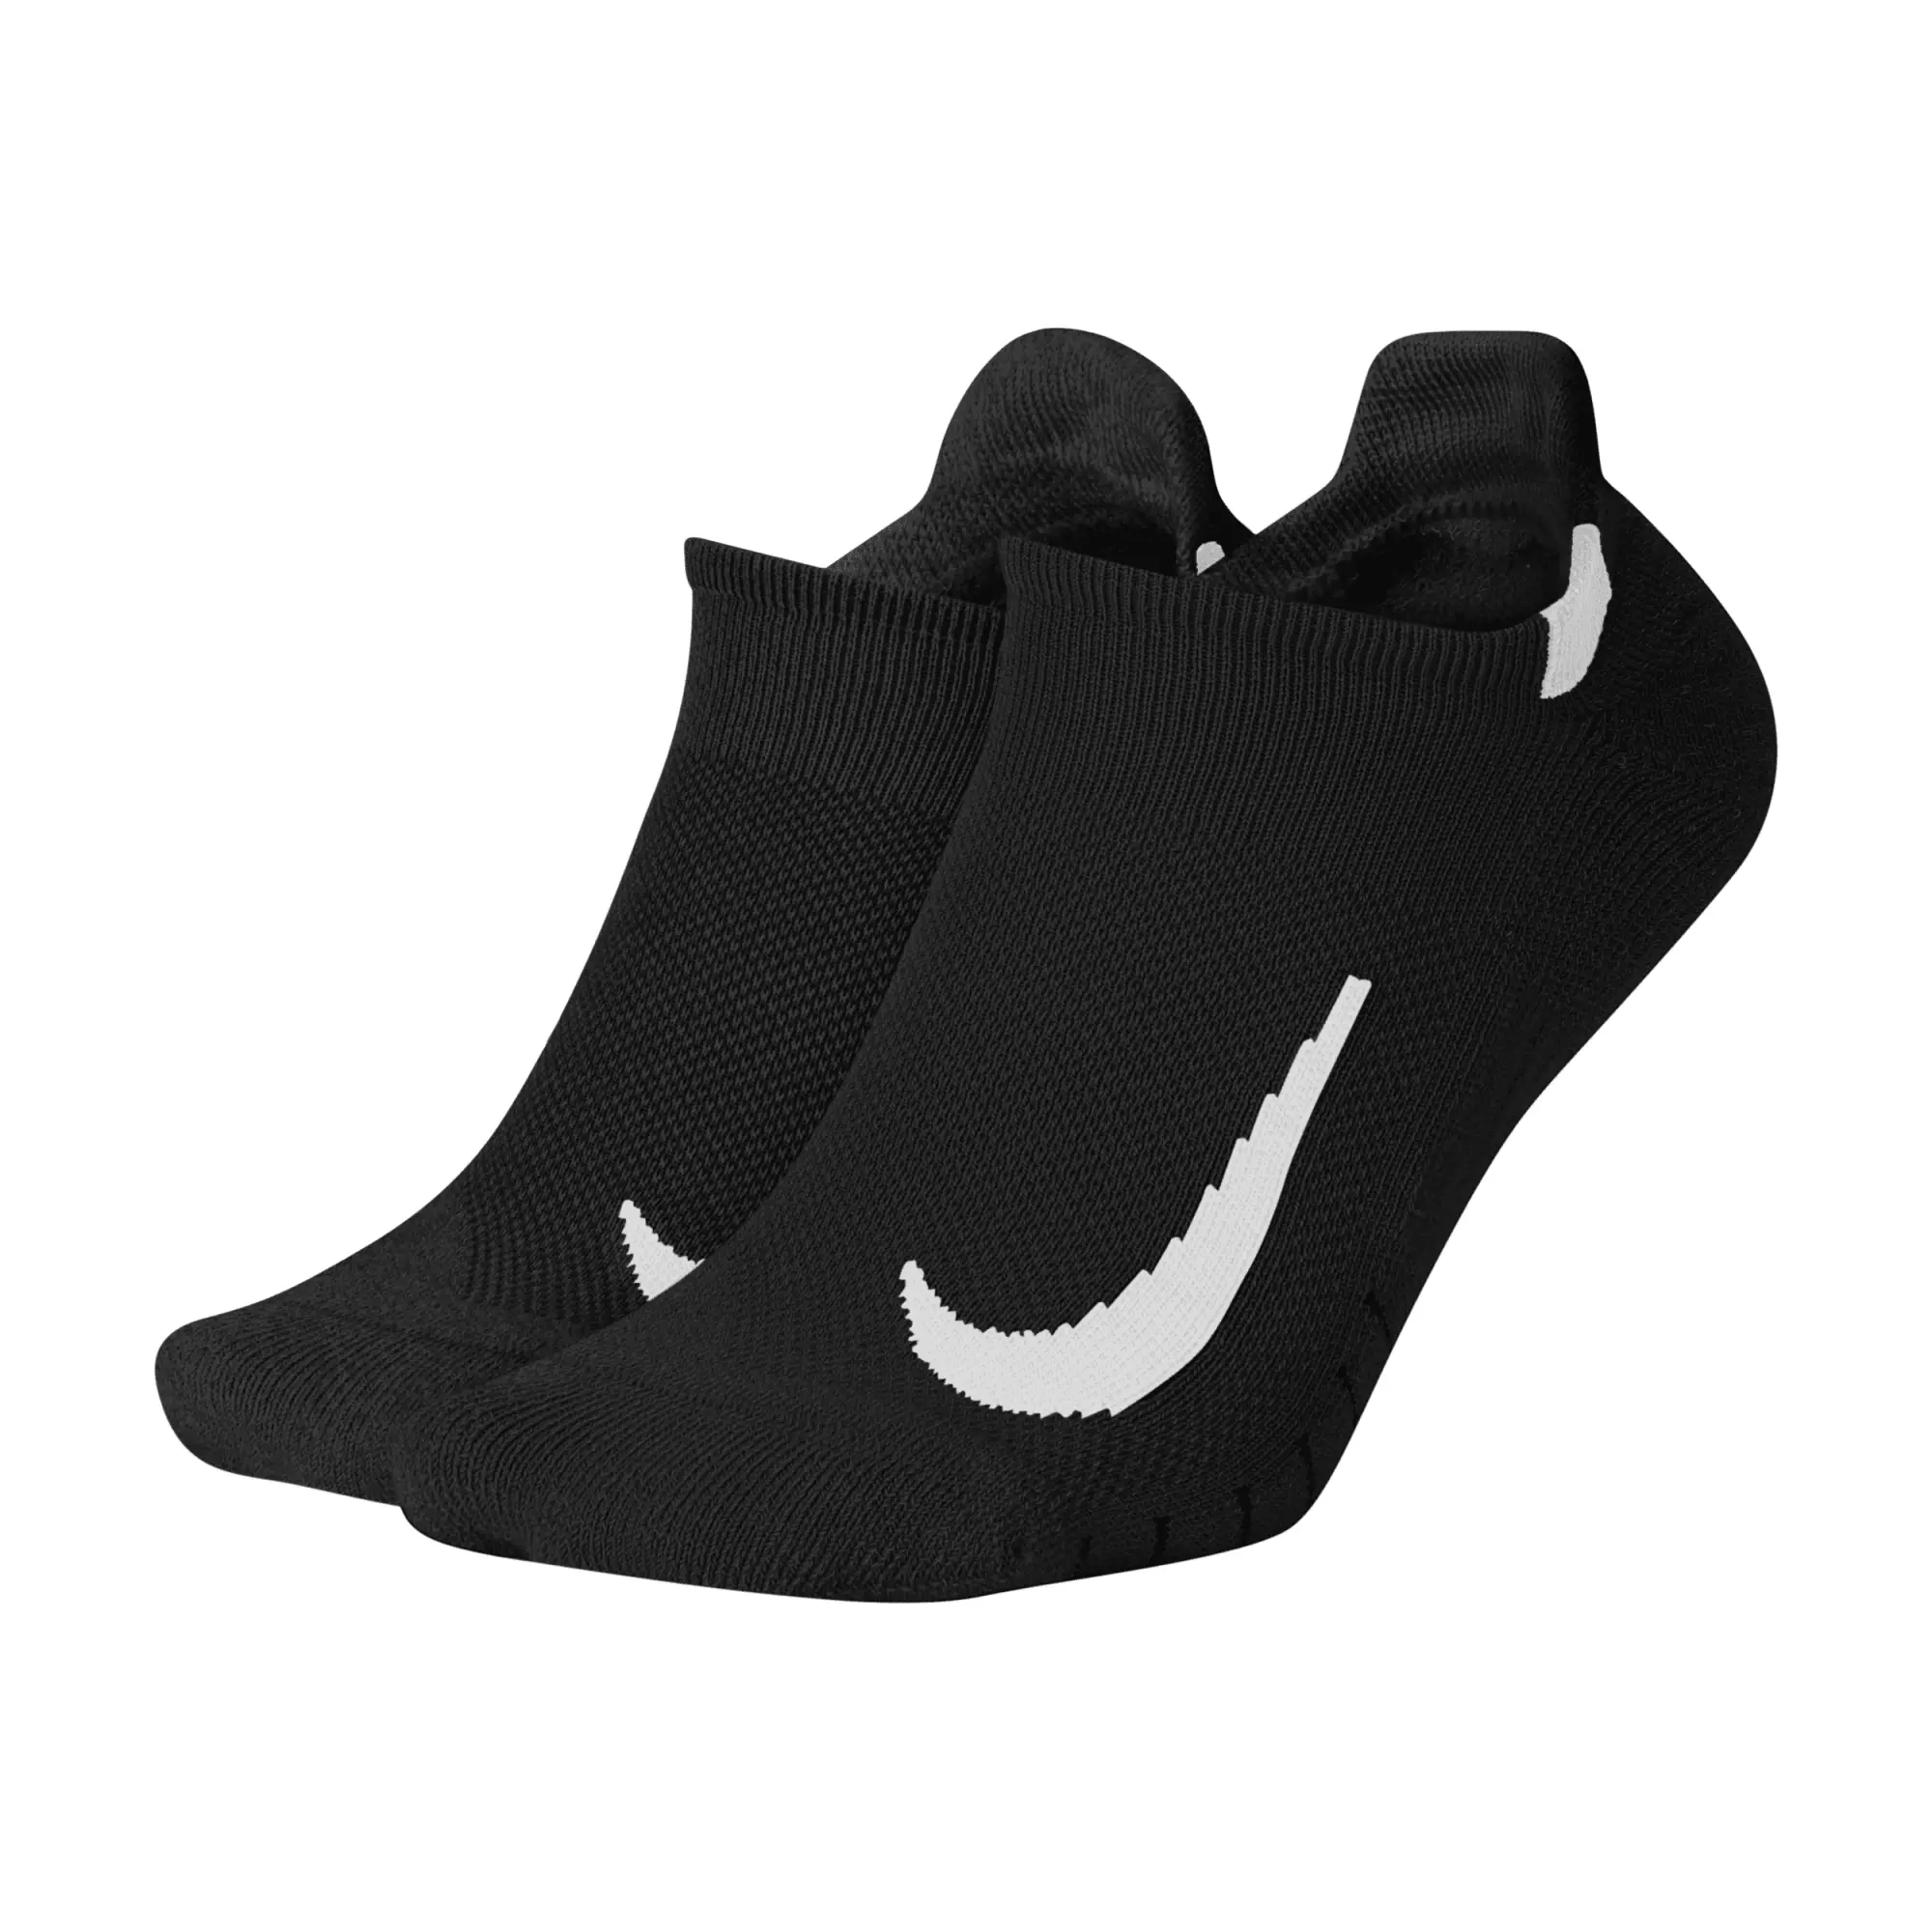 Nike Running Multiplier Socks - Black/White, Black/White